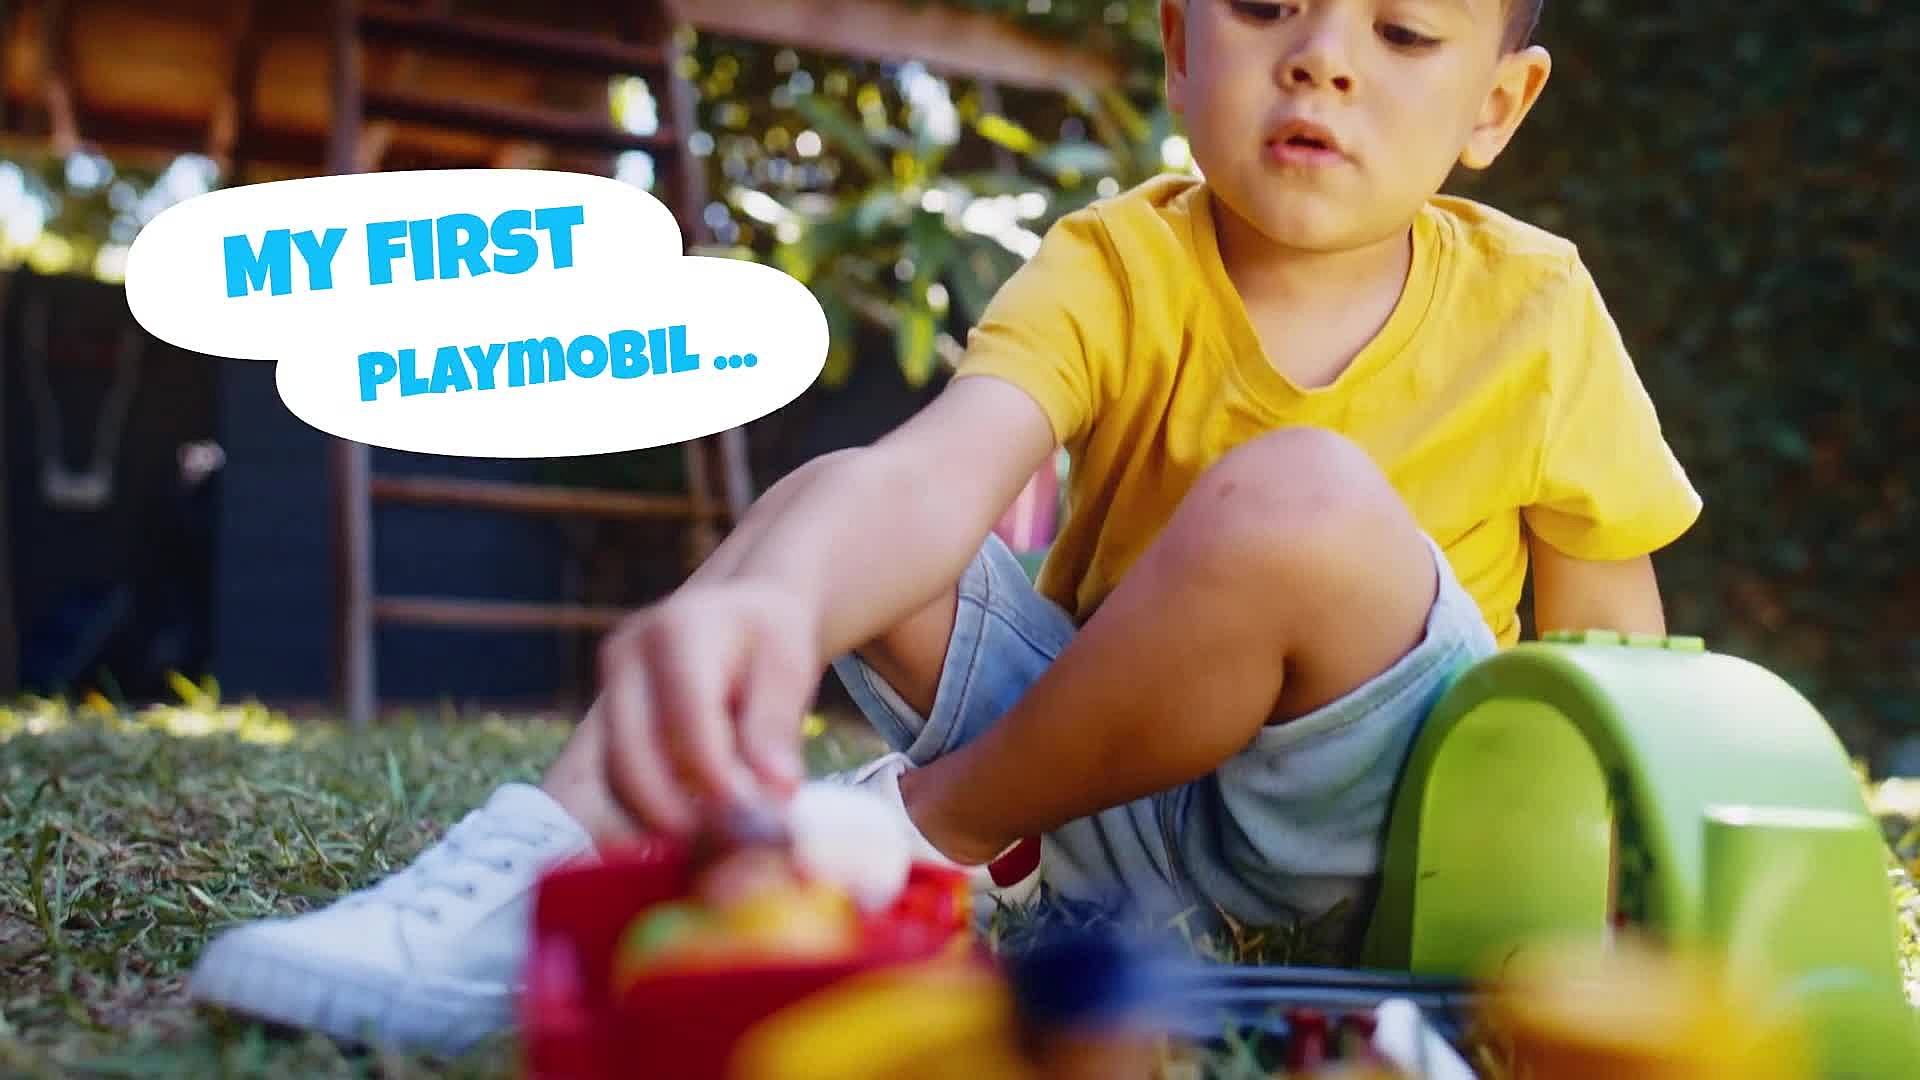 71157 - Playmobil 1.2.3 - Aire de jeux